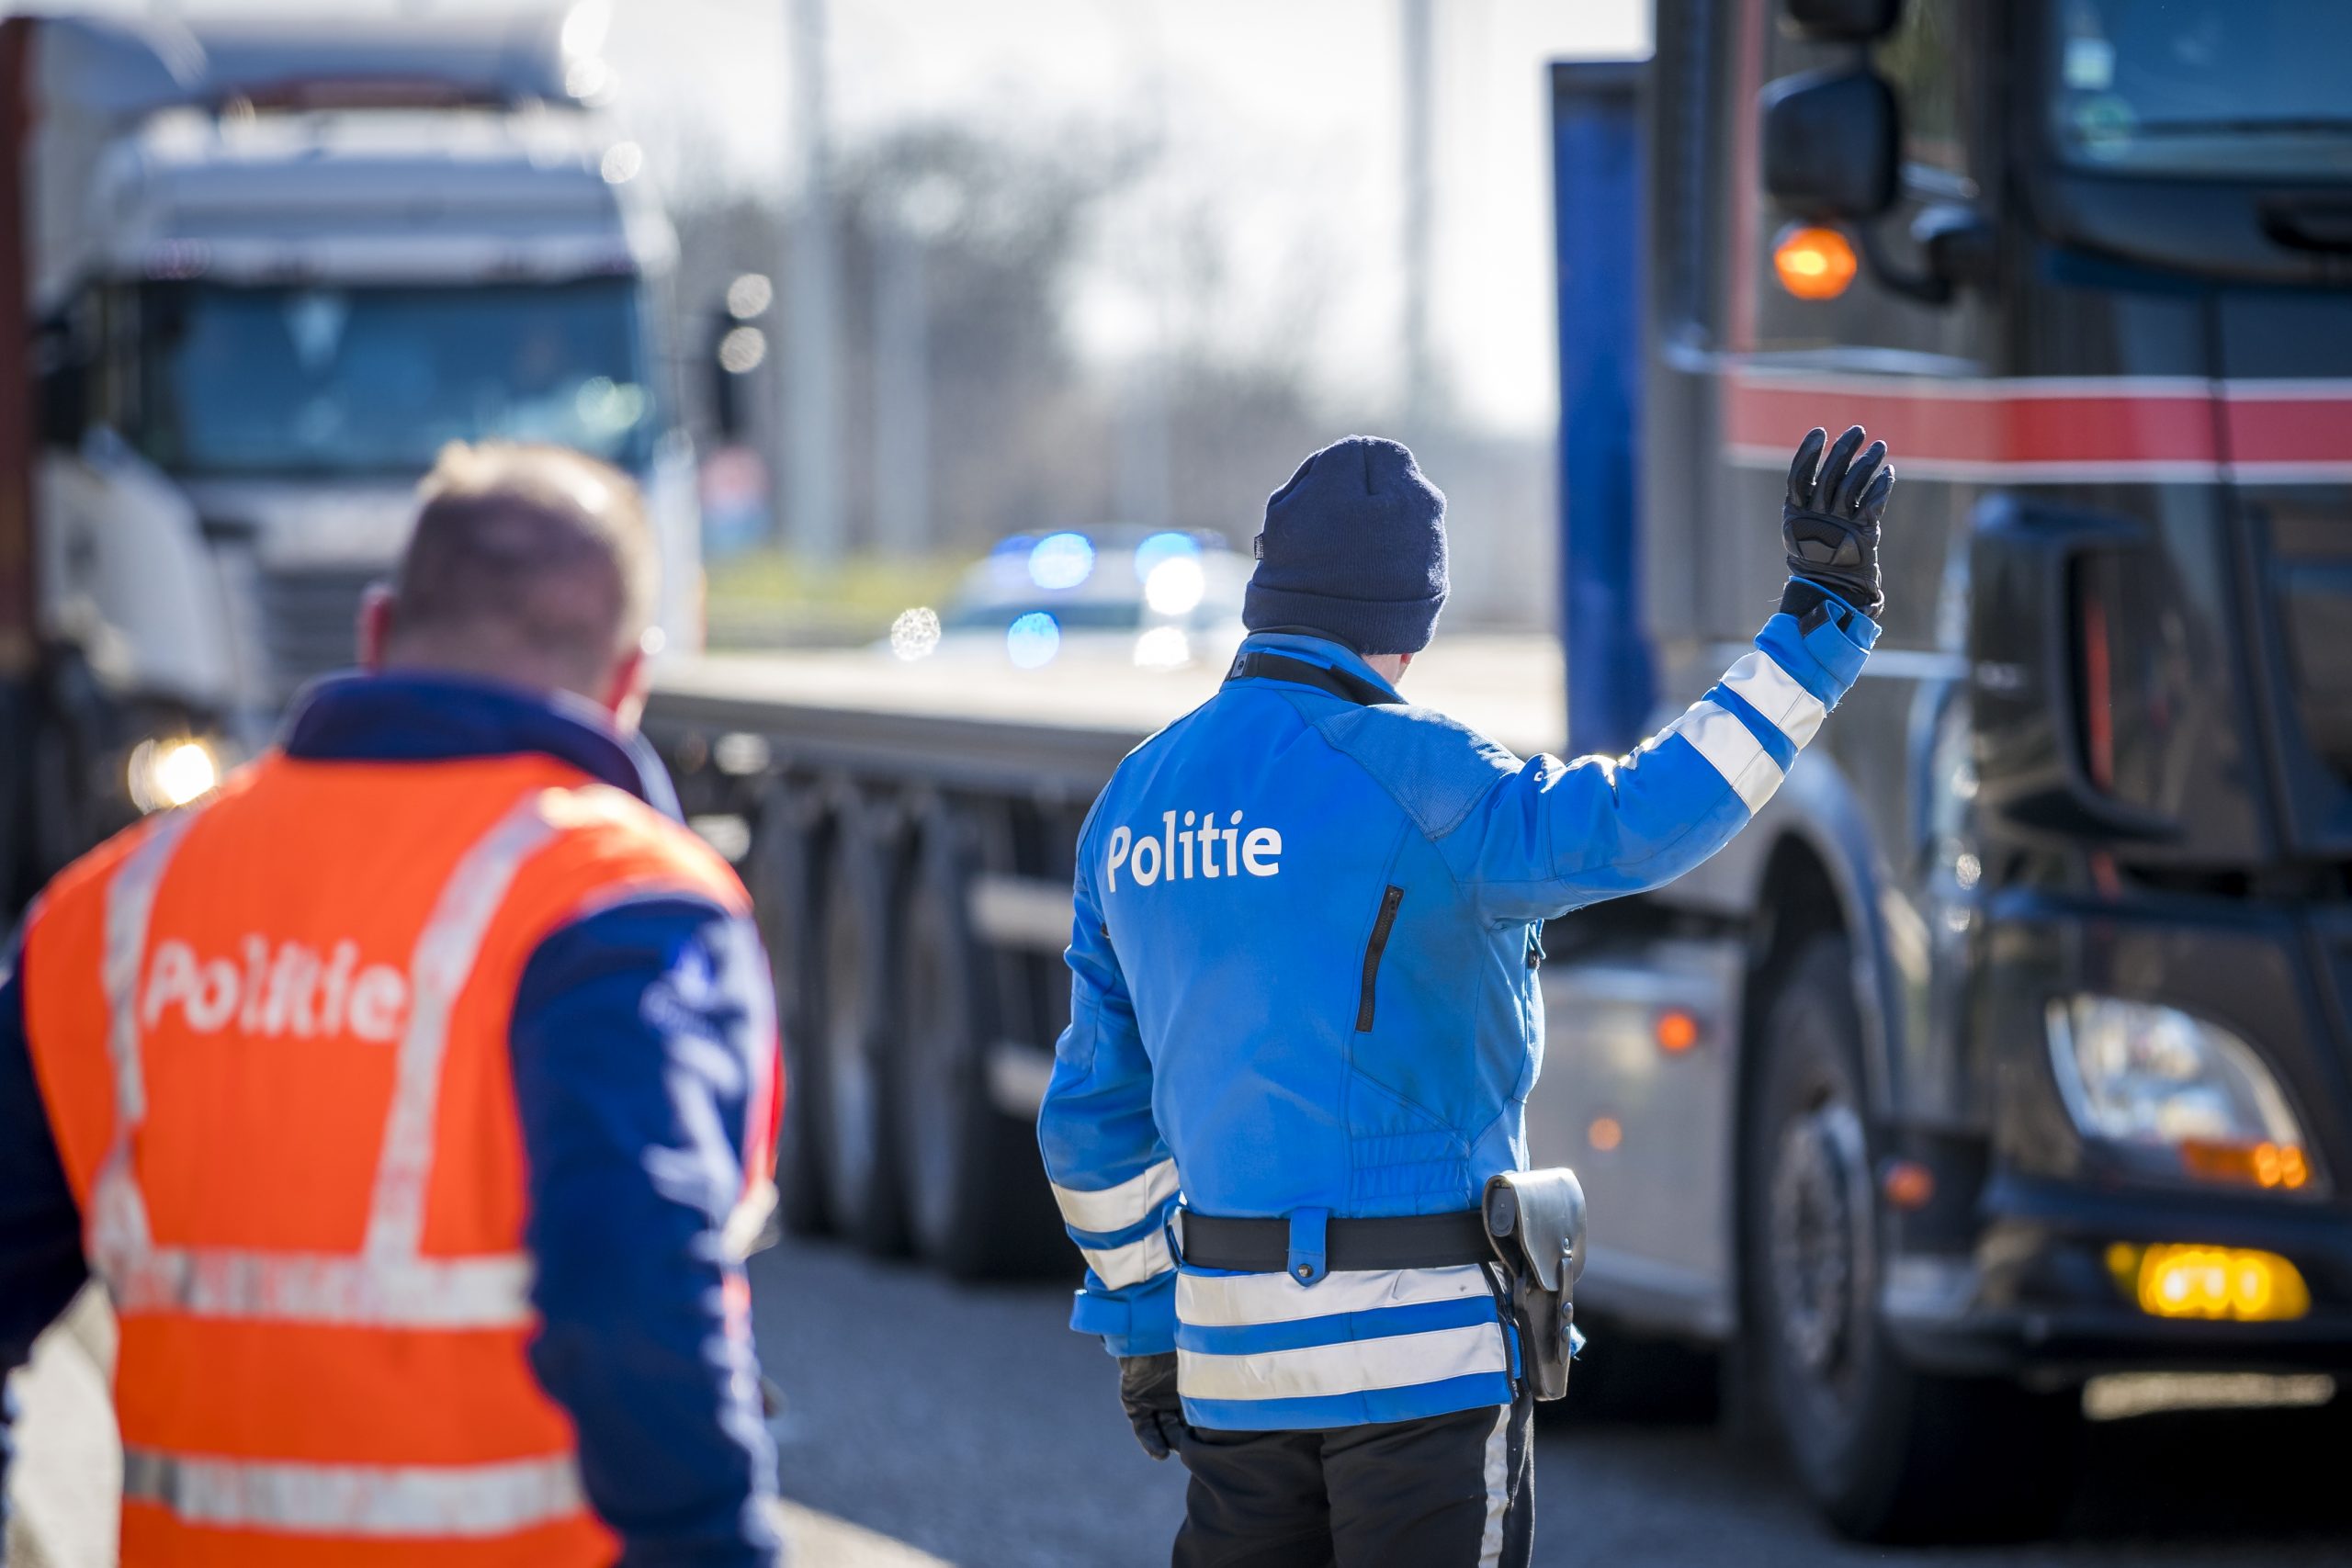 Controle op snelweg tussen Nederland en Belgie